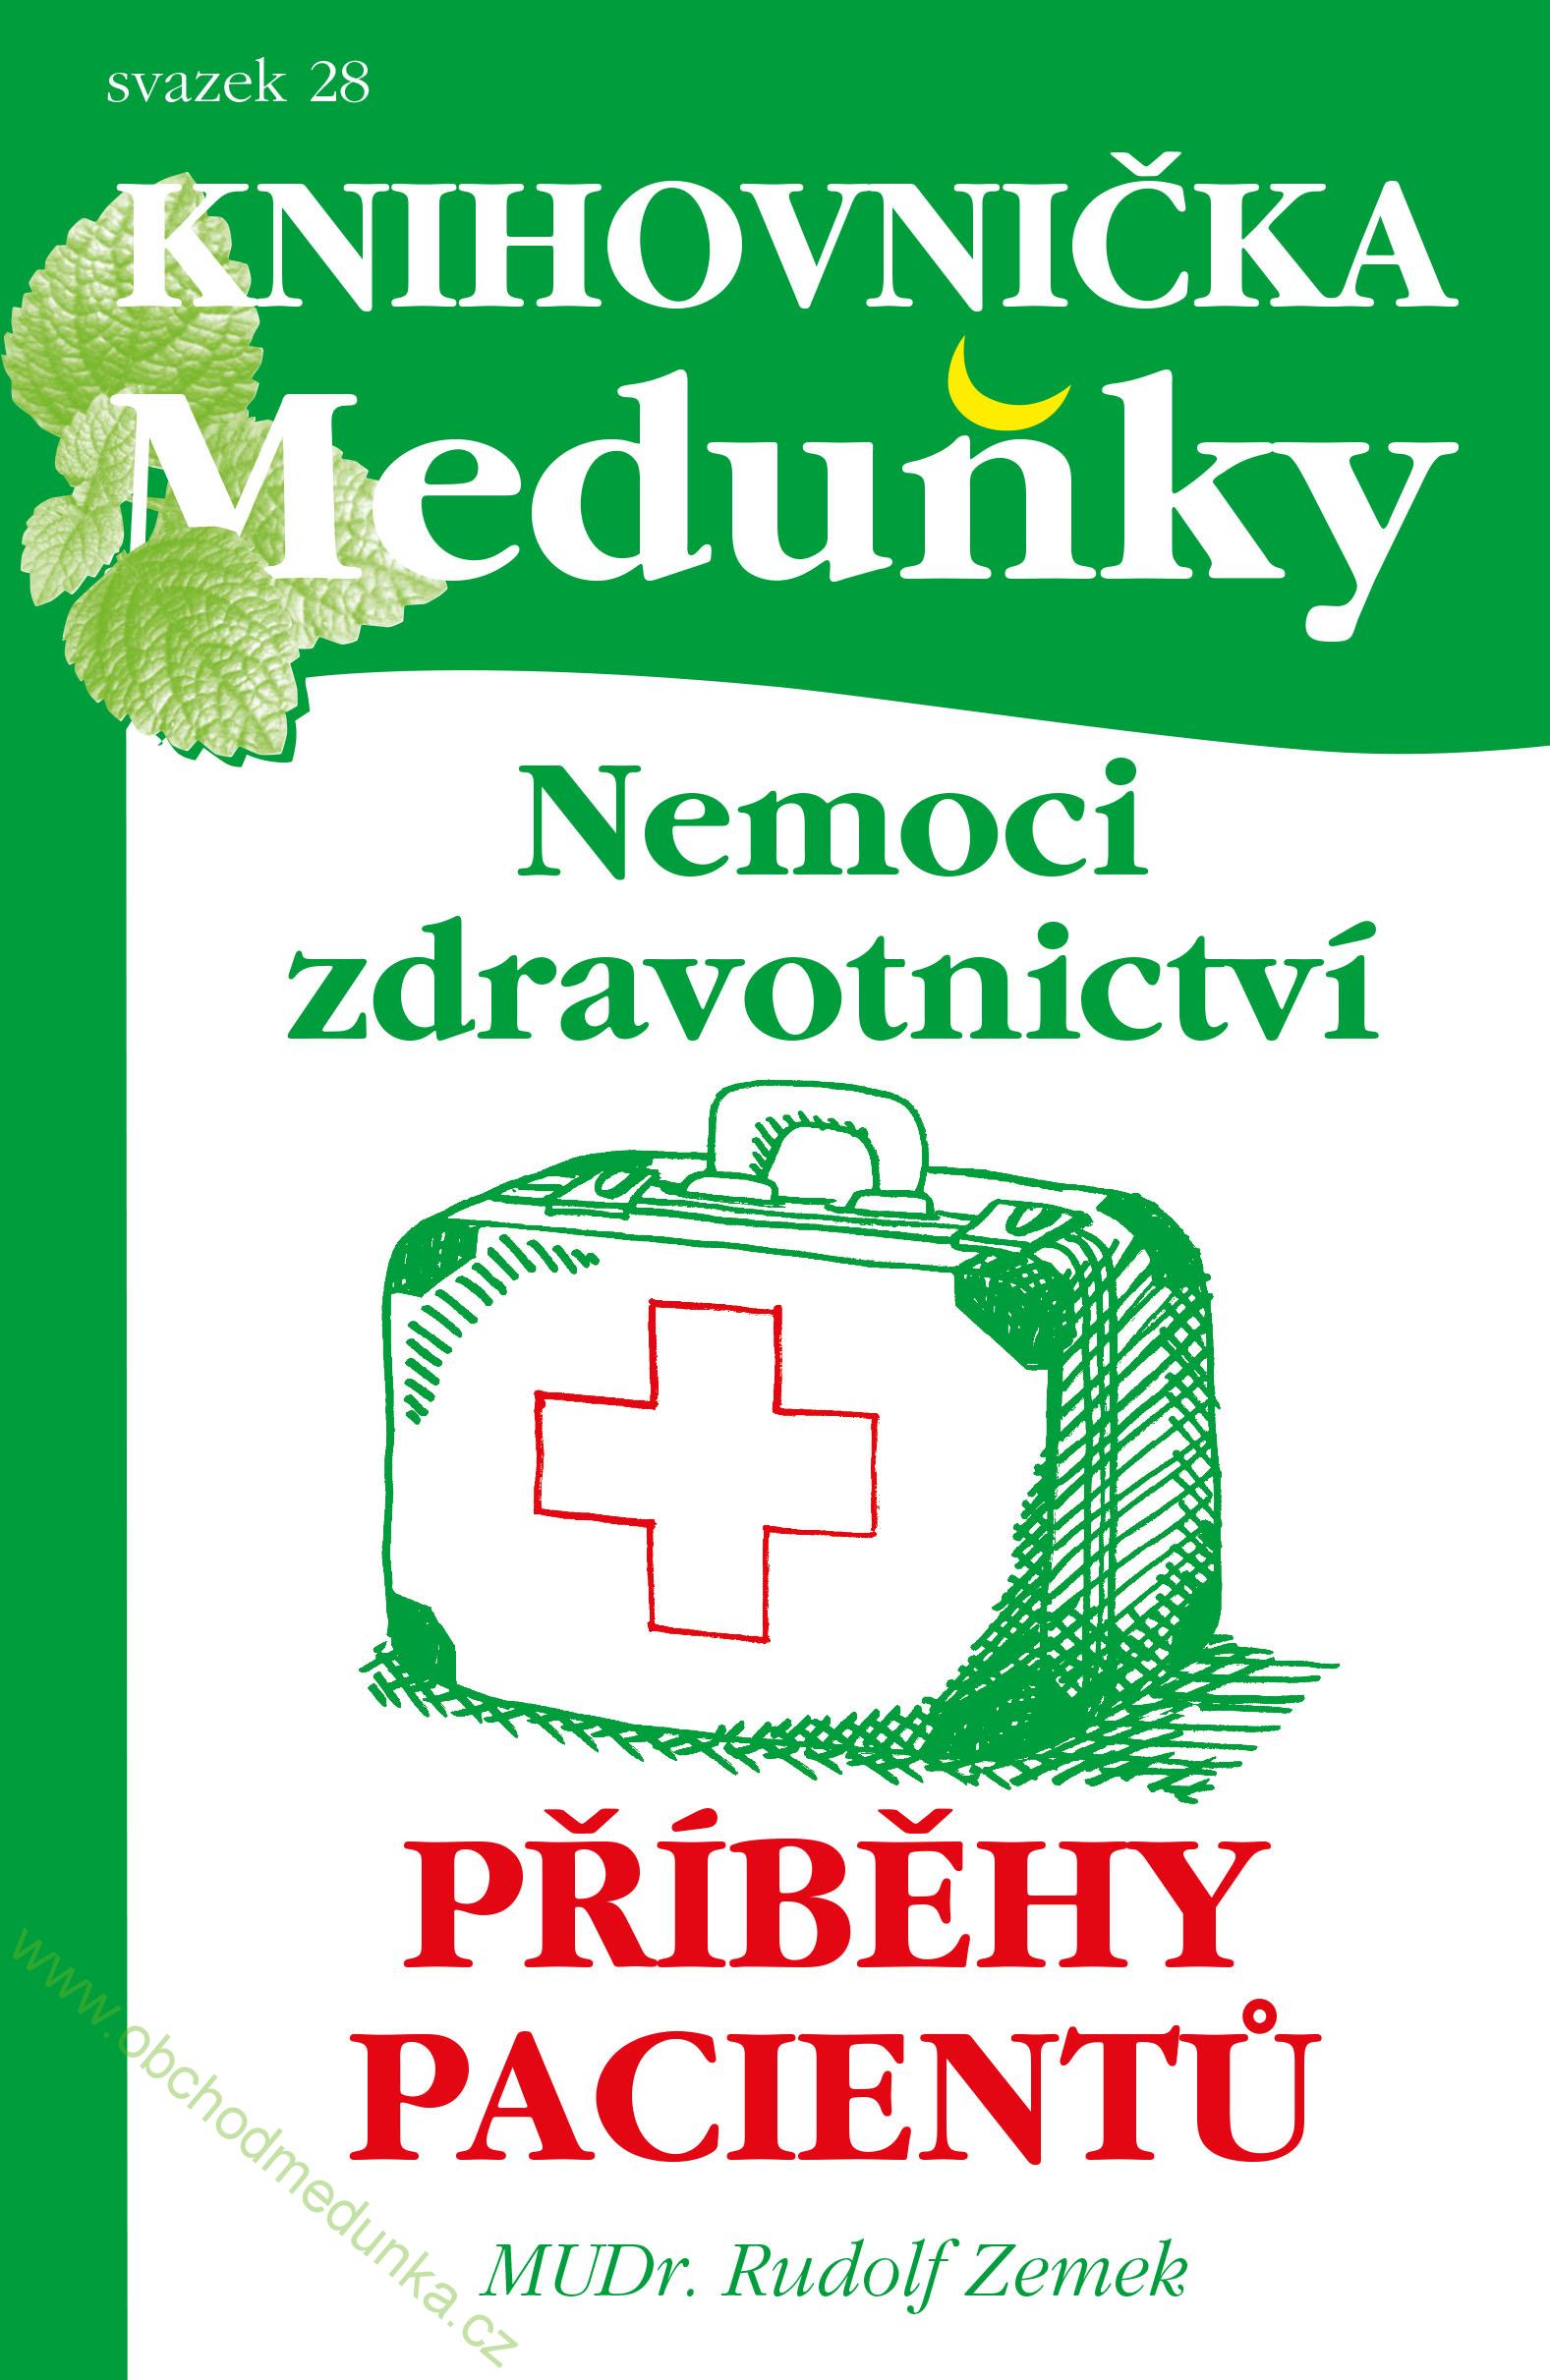 Knihovnička Meduňky 28 - Nemoci zdravotnictví, příběhy pacientů: Mudr. Rudolf Zemek